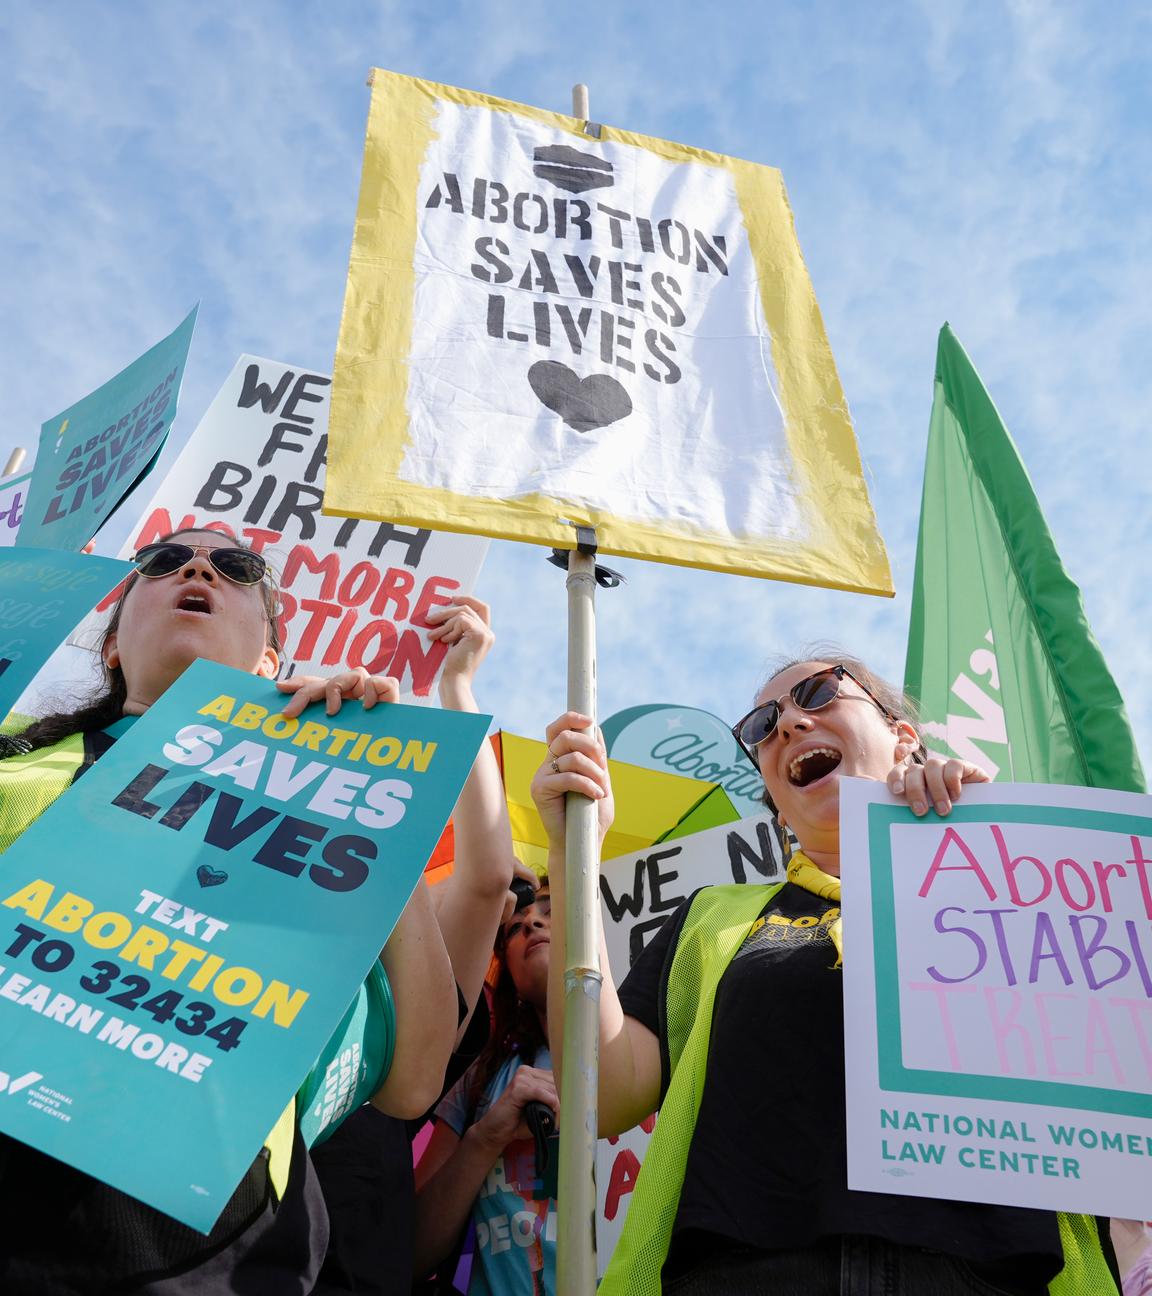 Aktivisten protestieren halten bunte Schilder mit der Aufschrift "ABORTION SAVES LIVES" und weiteren Forderungen für das Recht auf Abtreibung in den USA hoch